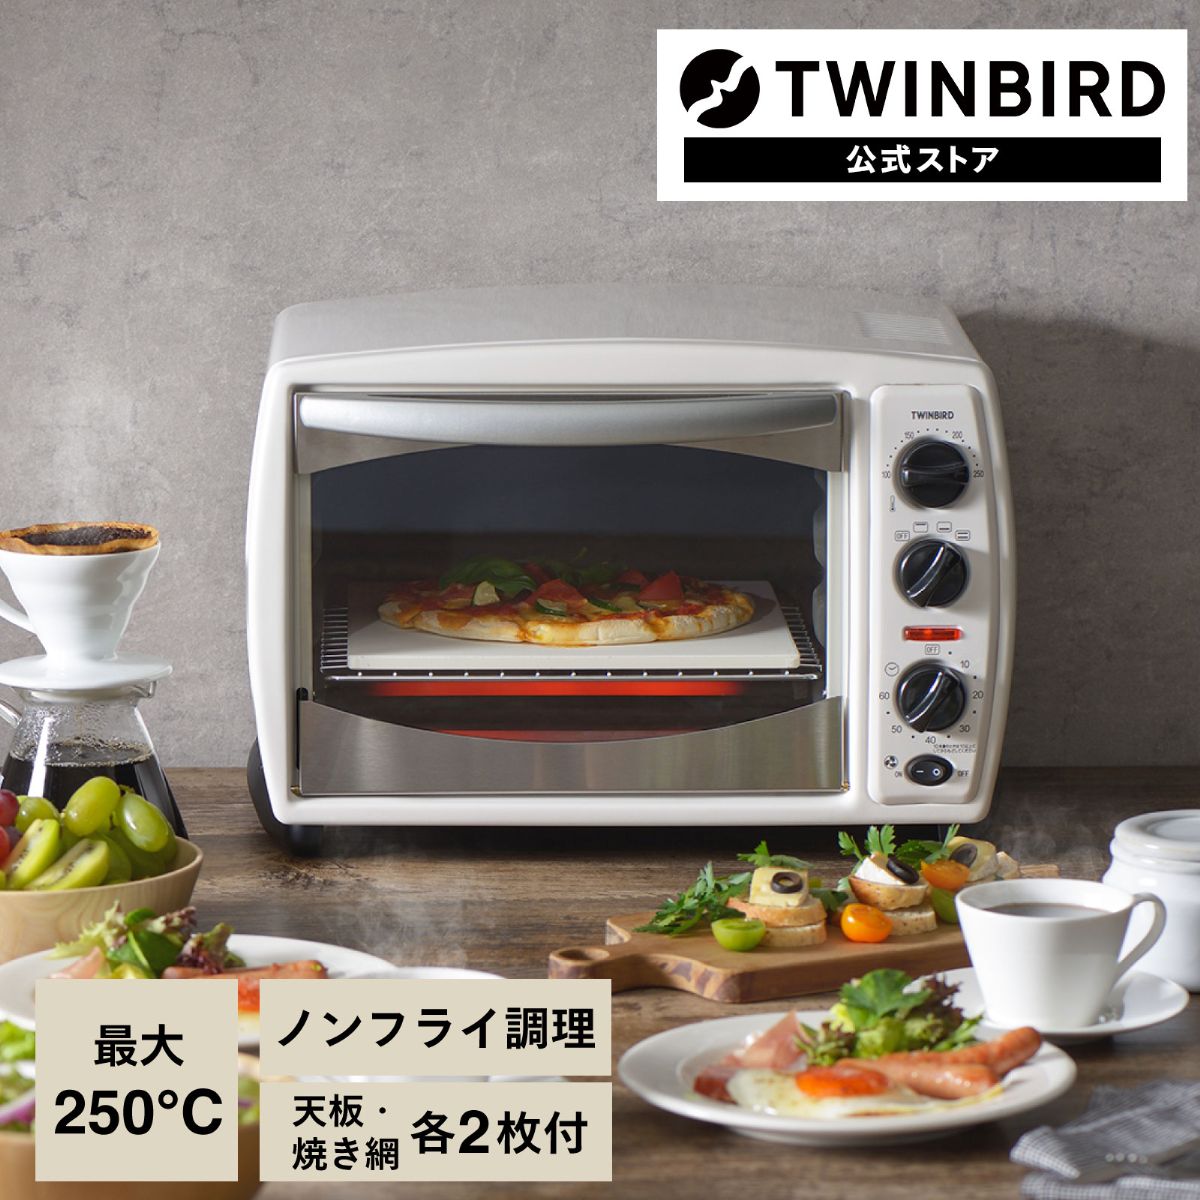 【新品】TWINBIRD TS-4179W ノンフライオーブンTWINBIRD